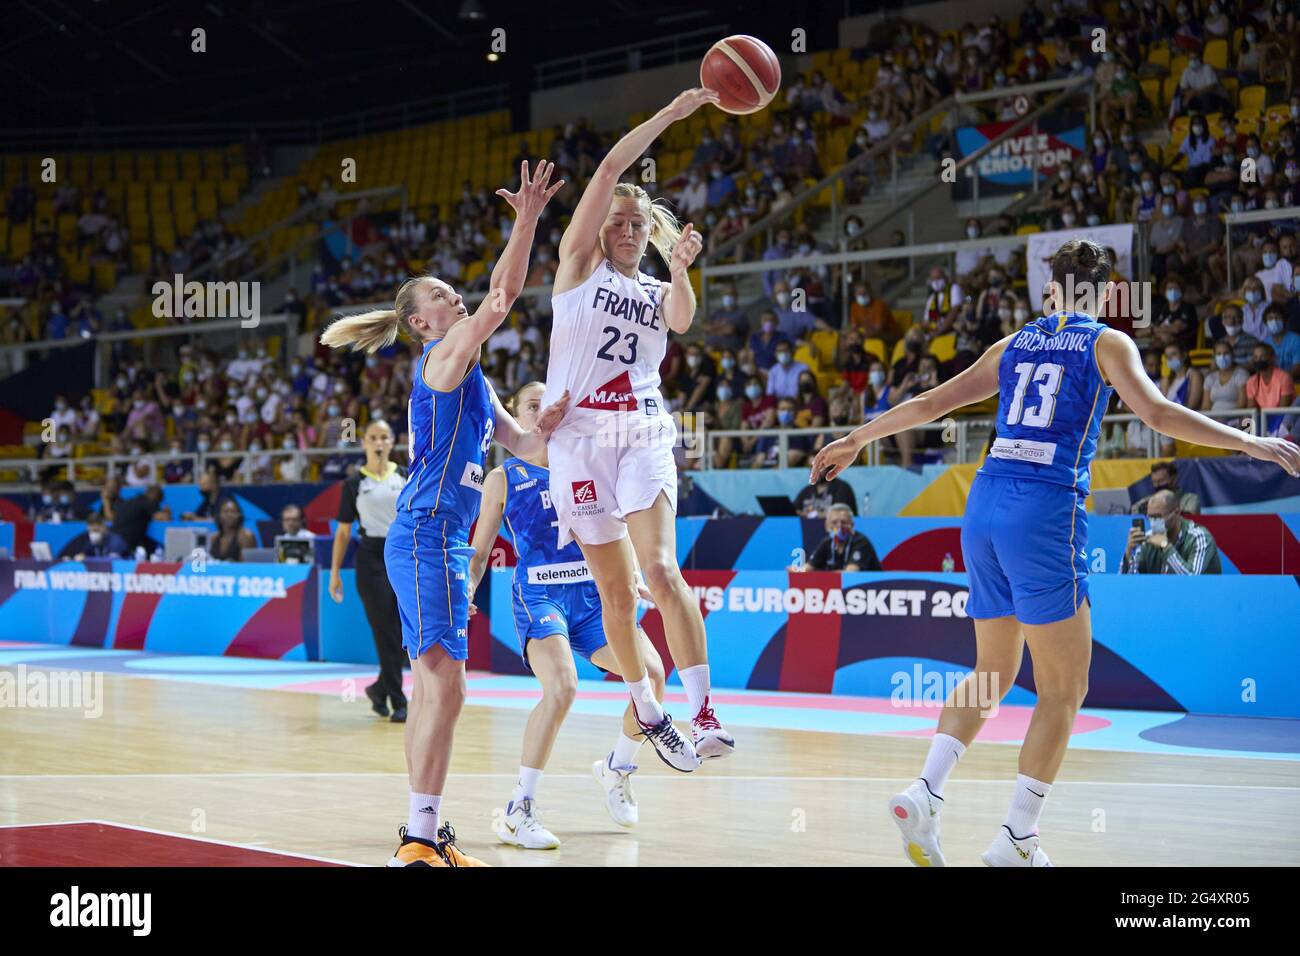 Marine JOHANNES (23) de France pendant l'Eurobasket 2021 de la FIBA pour  femmes, quart de finale du match de basket-ball entre la France et la  Bosnie-Herzégovine le 23 juin 2021 à Rhenus